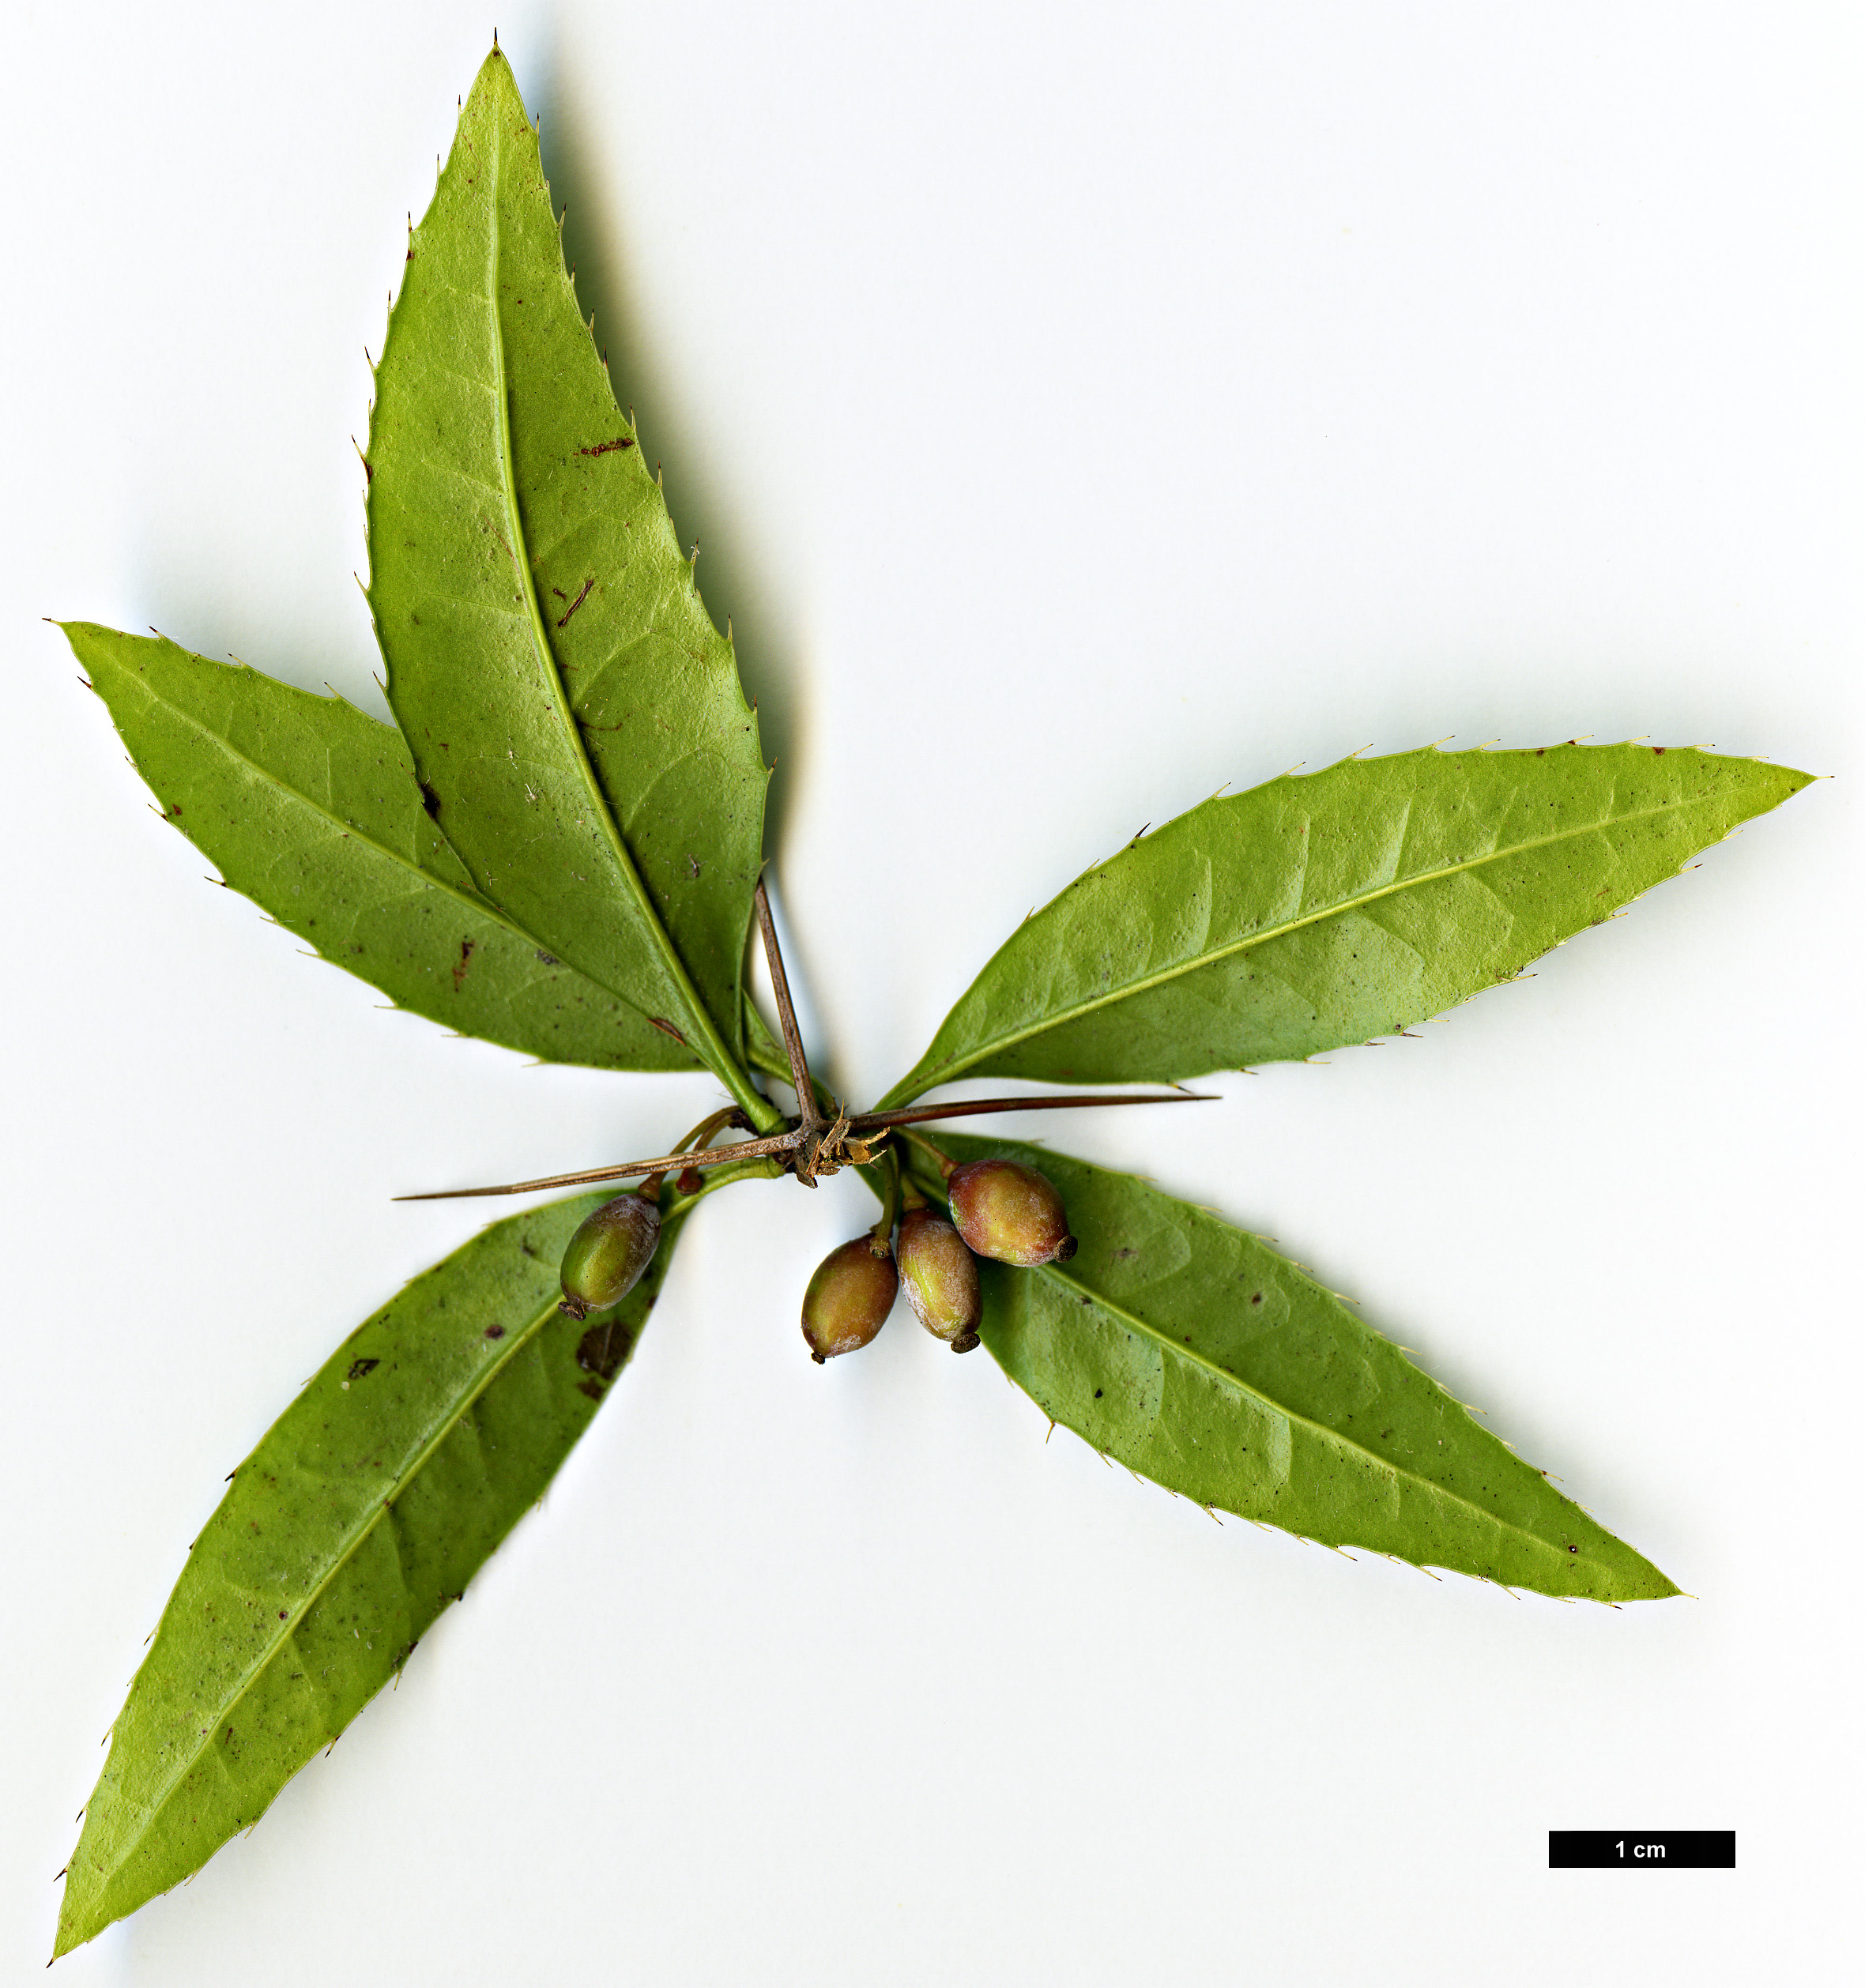 High resolution image: Family: Berberidaceae - Genus: Berberis - Taxon: hayatana